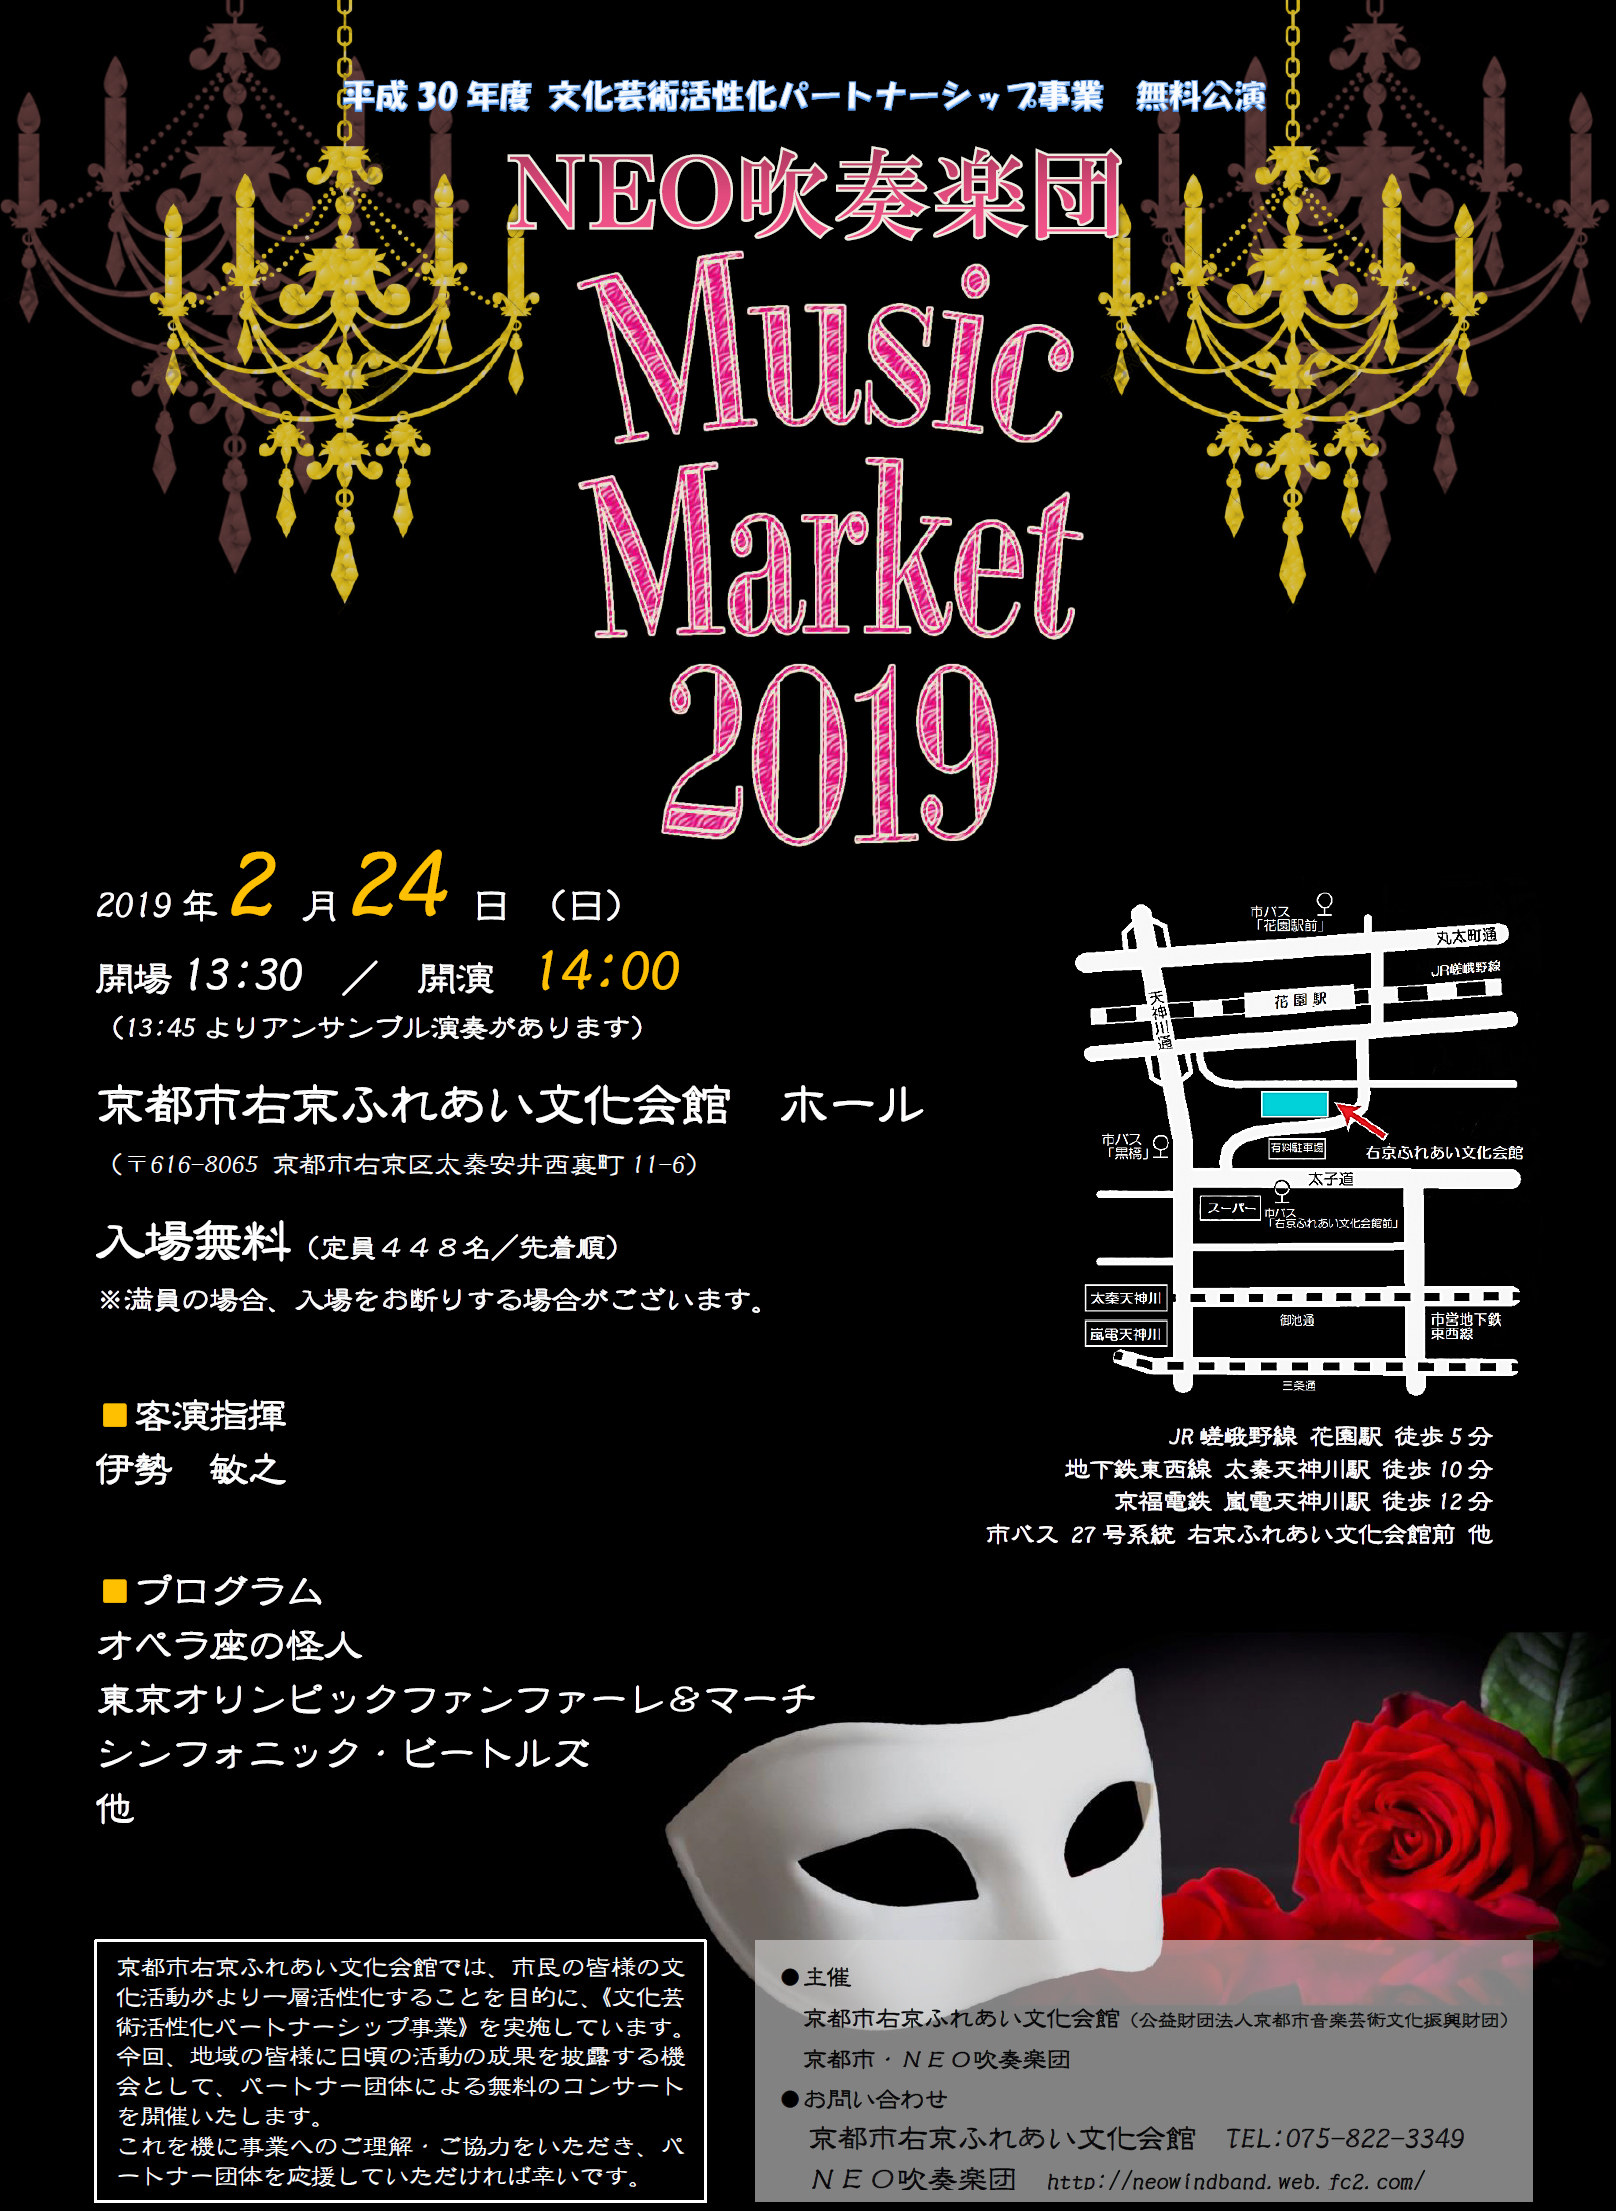 NEO吹奏楽団 Music Market 2019 – 右京ファンクラブねっと